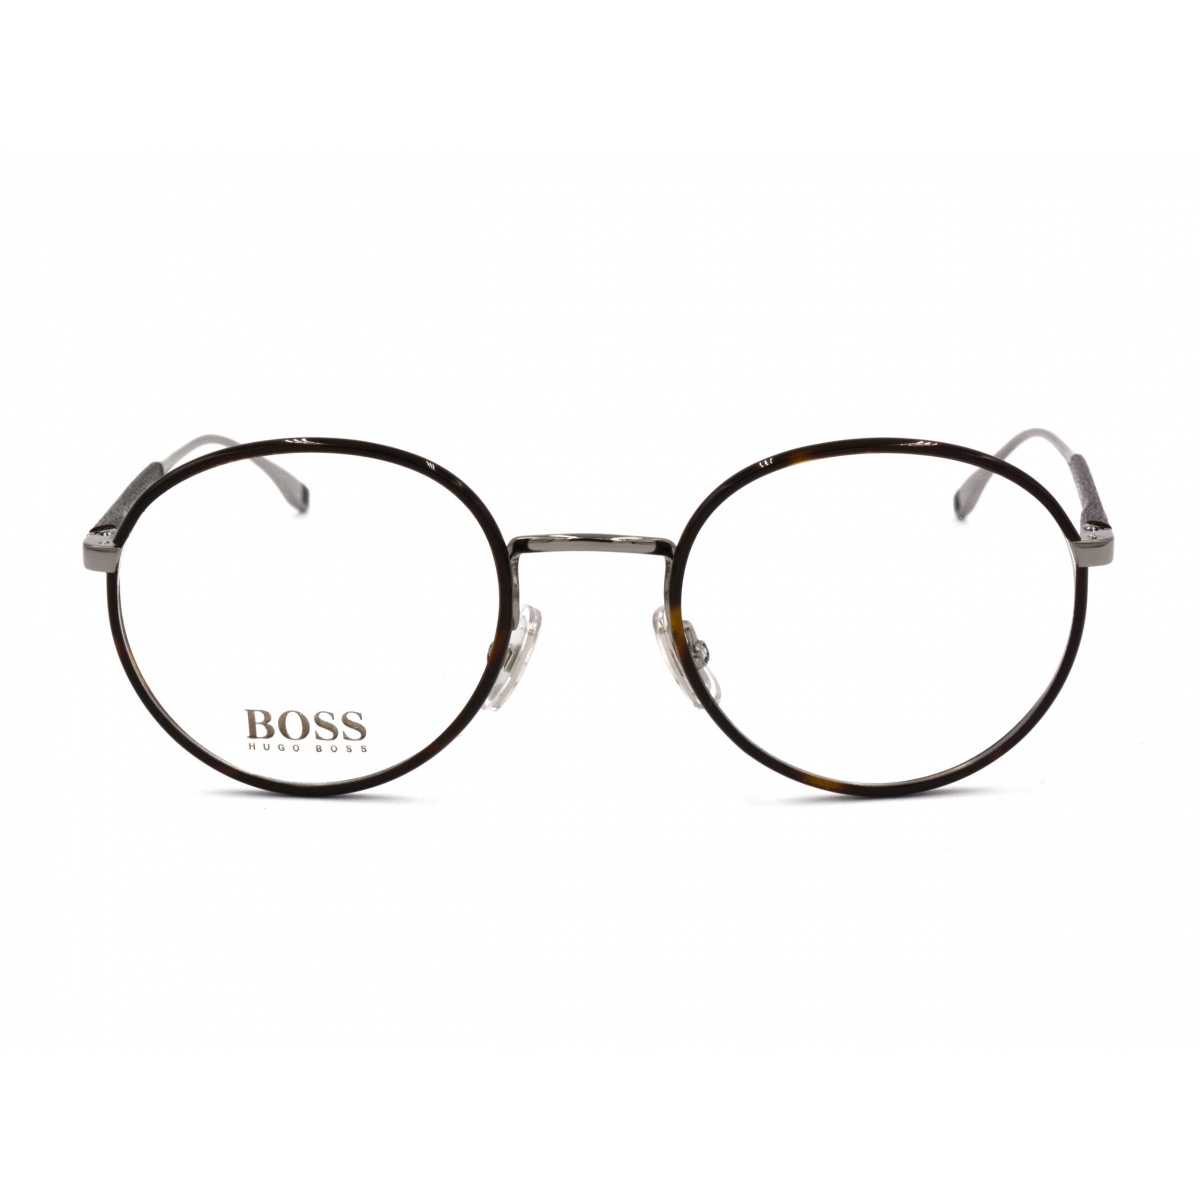 Γυαλιά οράσεως HUGO BOSS 0887 6LB Πειραιάς